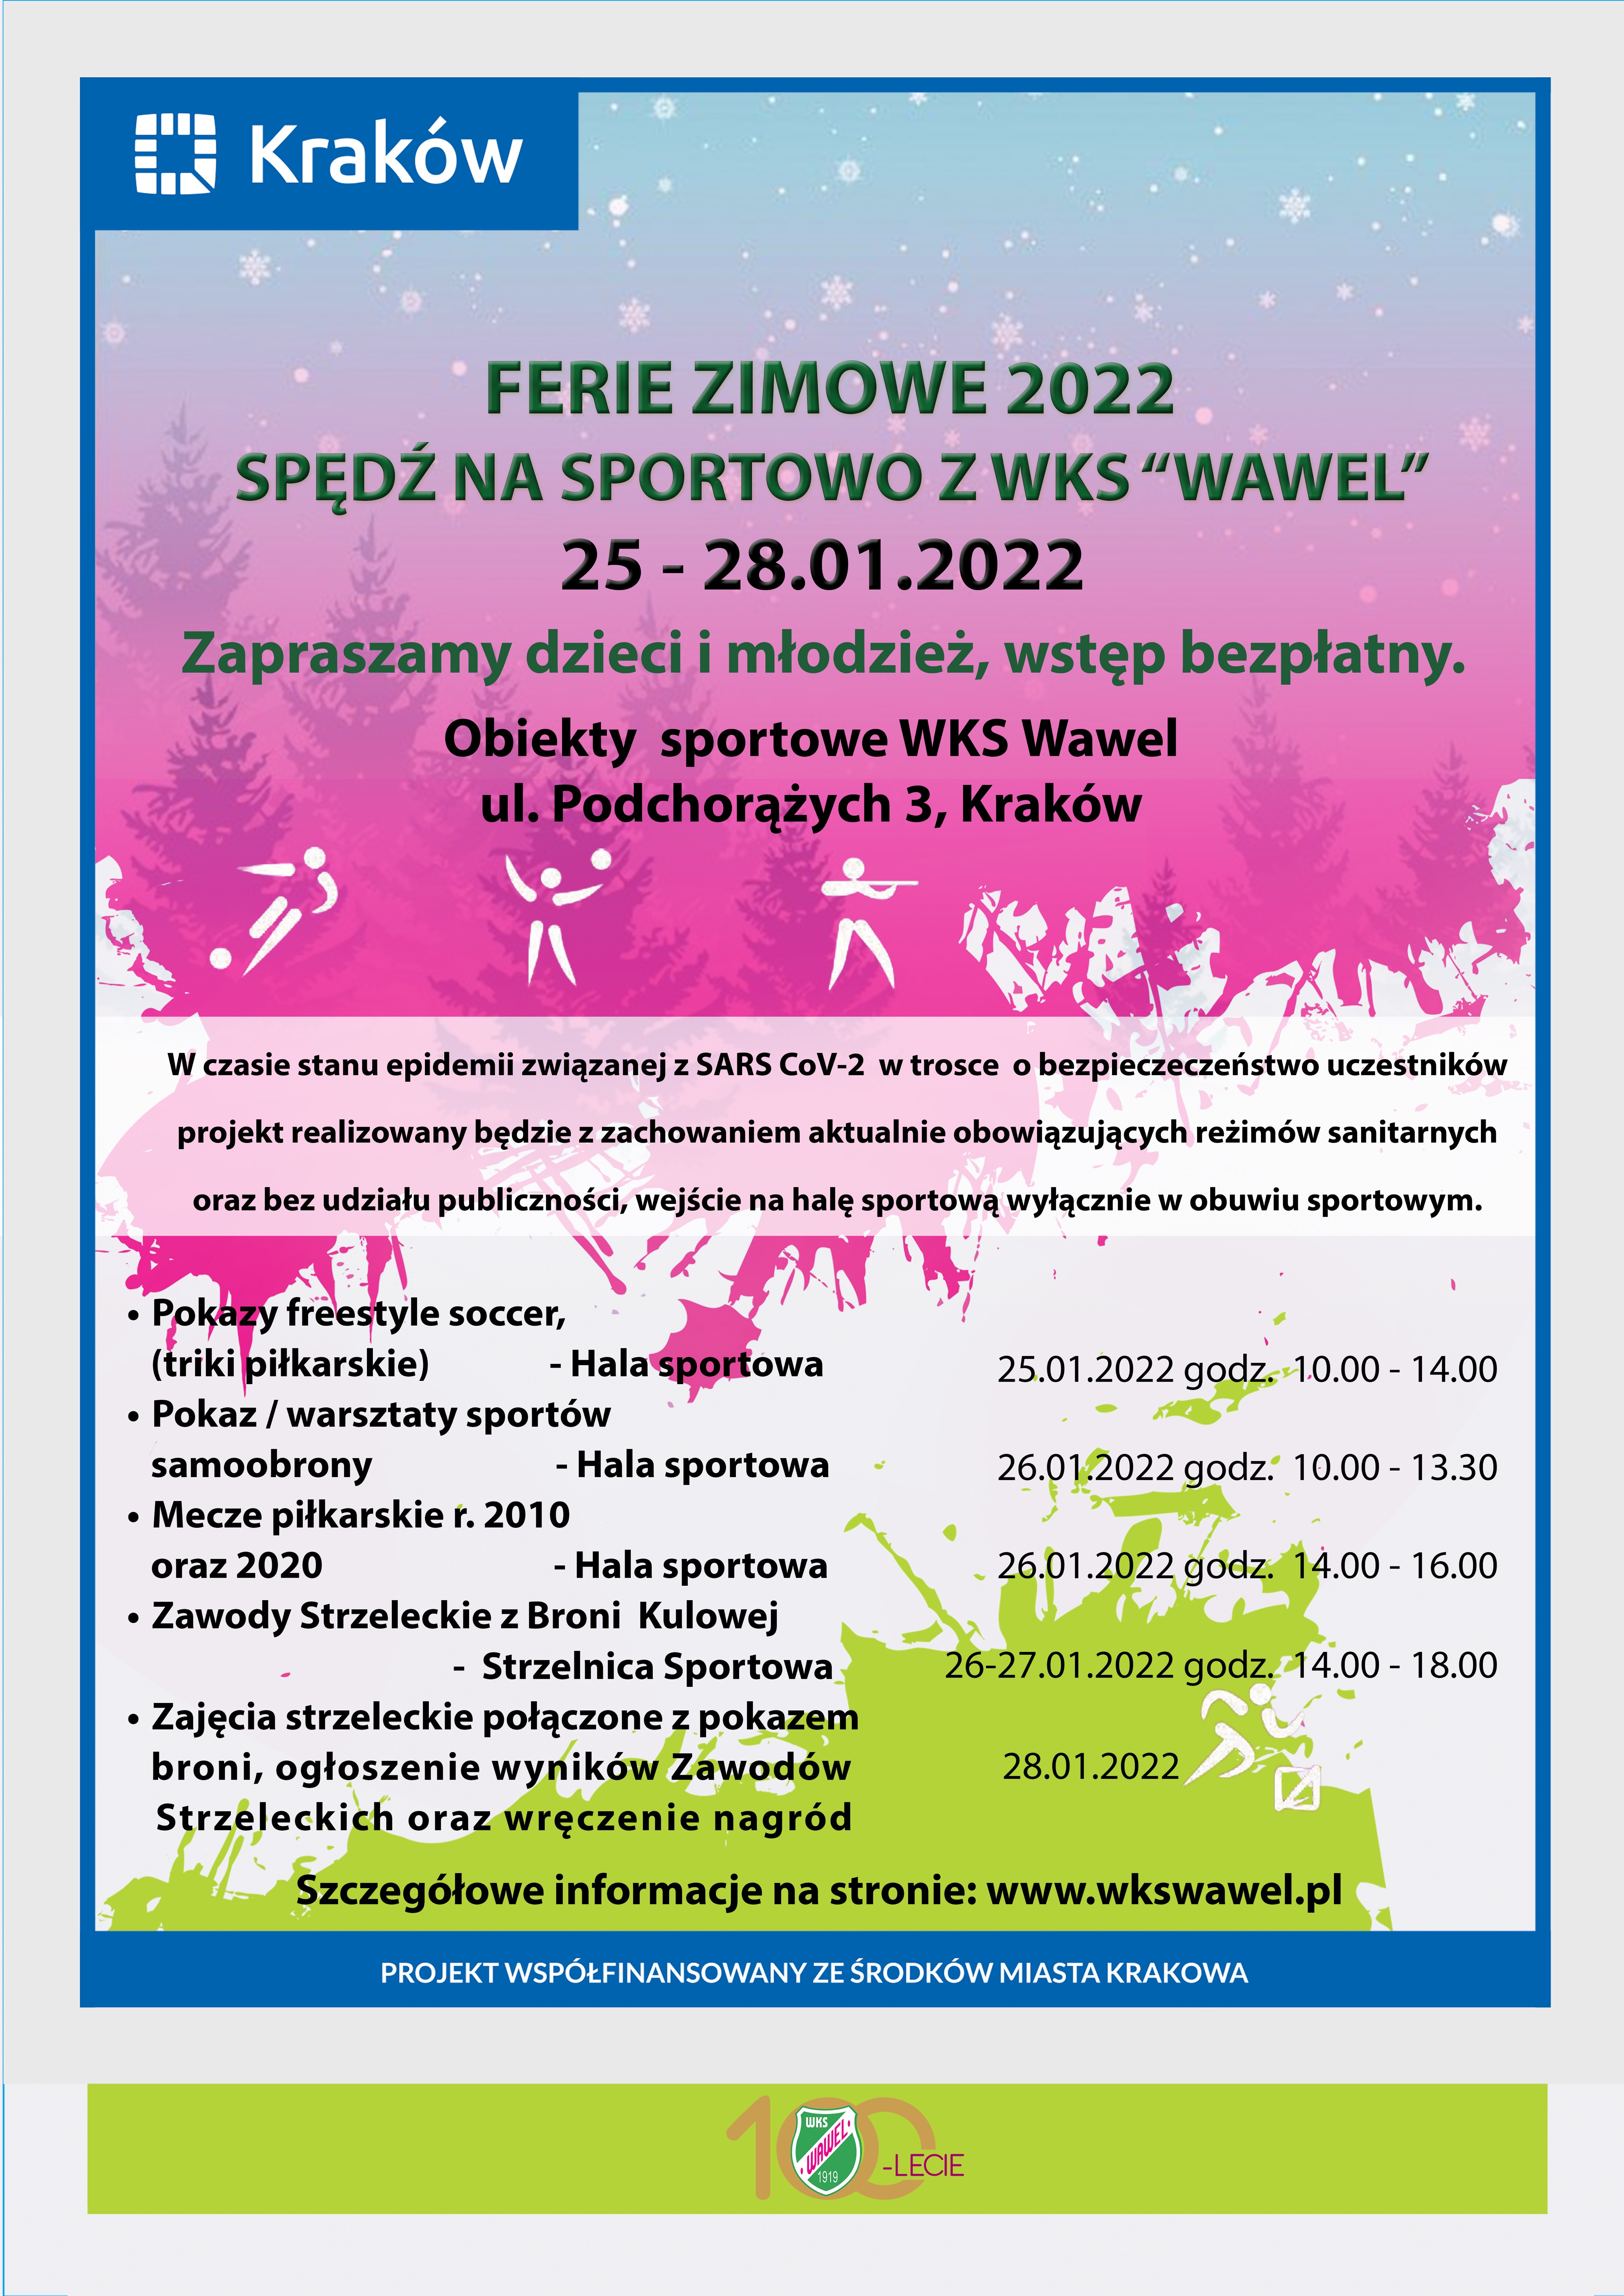 Wojskowy Klub Sportowy “Wawel” zaprasza dzieci i młodzież do spędzenia ferii na sportowo.